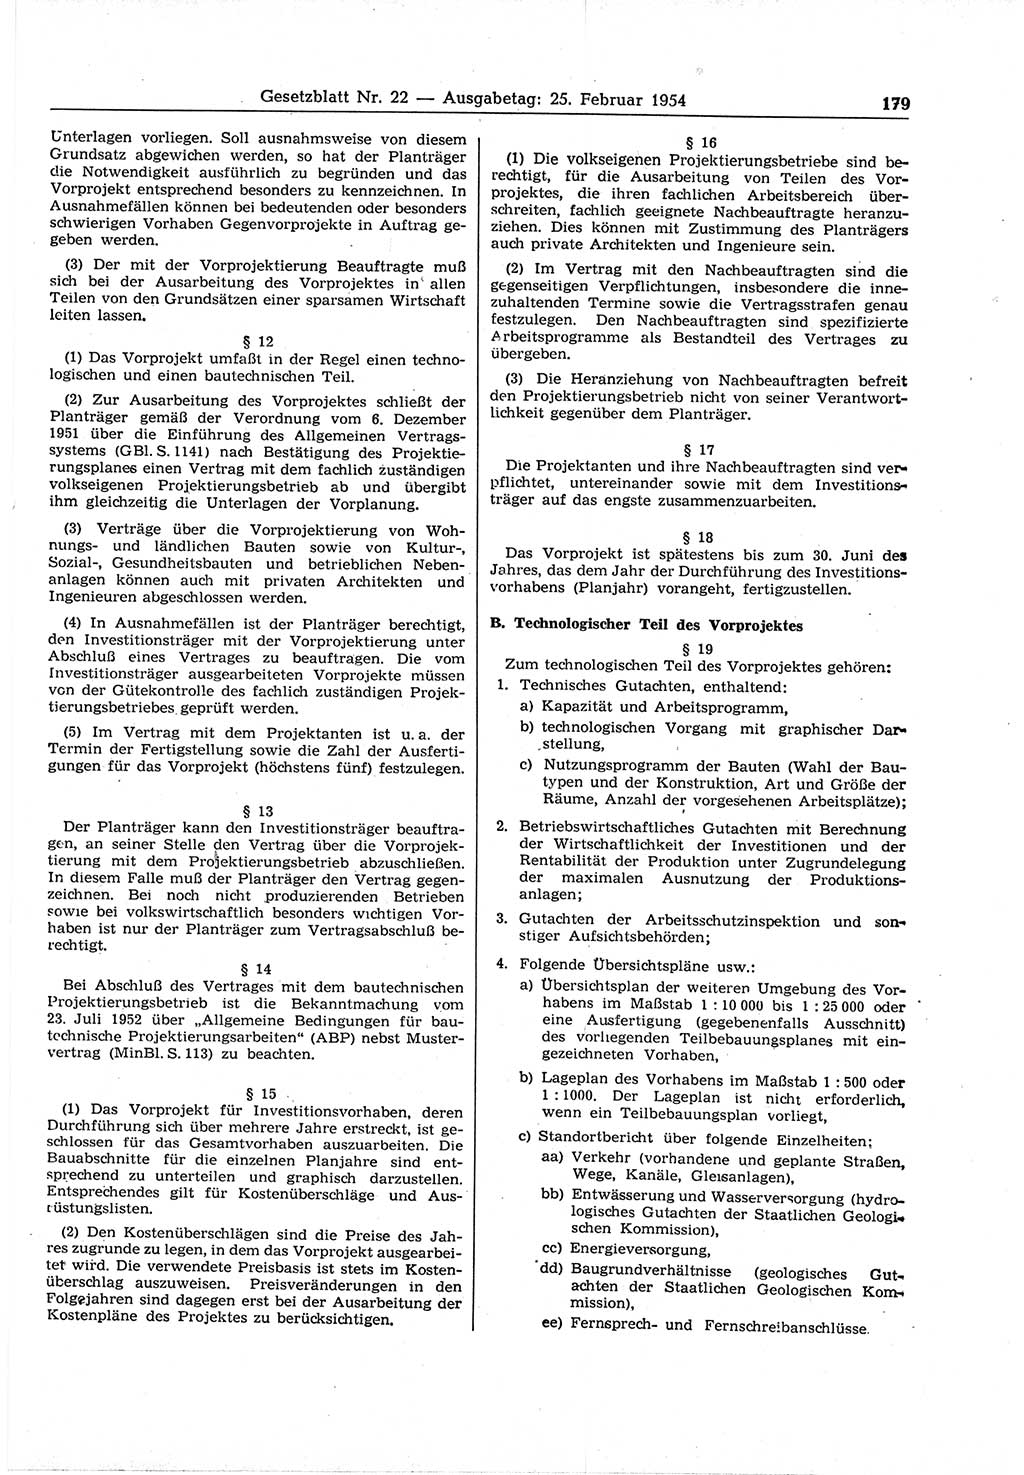 Gesetzblatt (GBl.) der Deutschen Demokratischen Republik (DDR) 1954, Seite 179 (GBl. DDR 1954, S. 179)